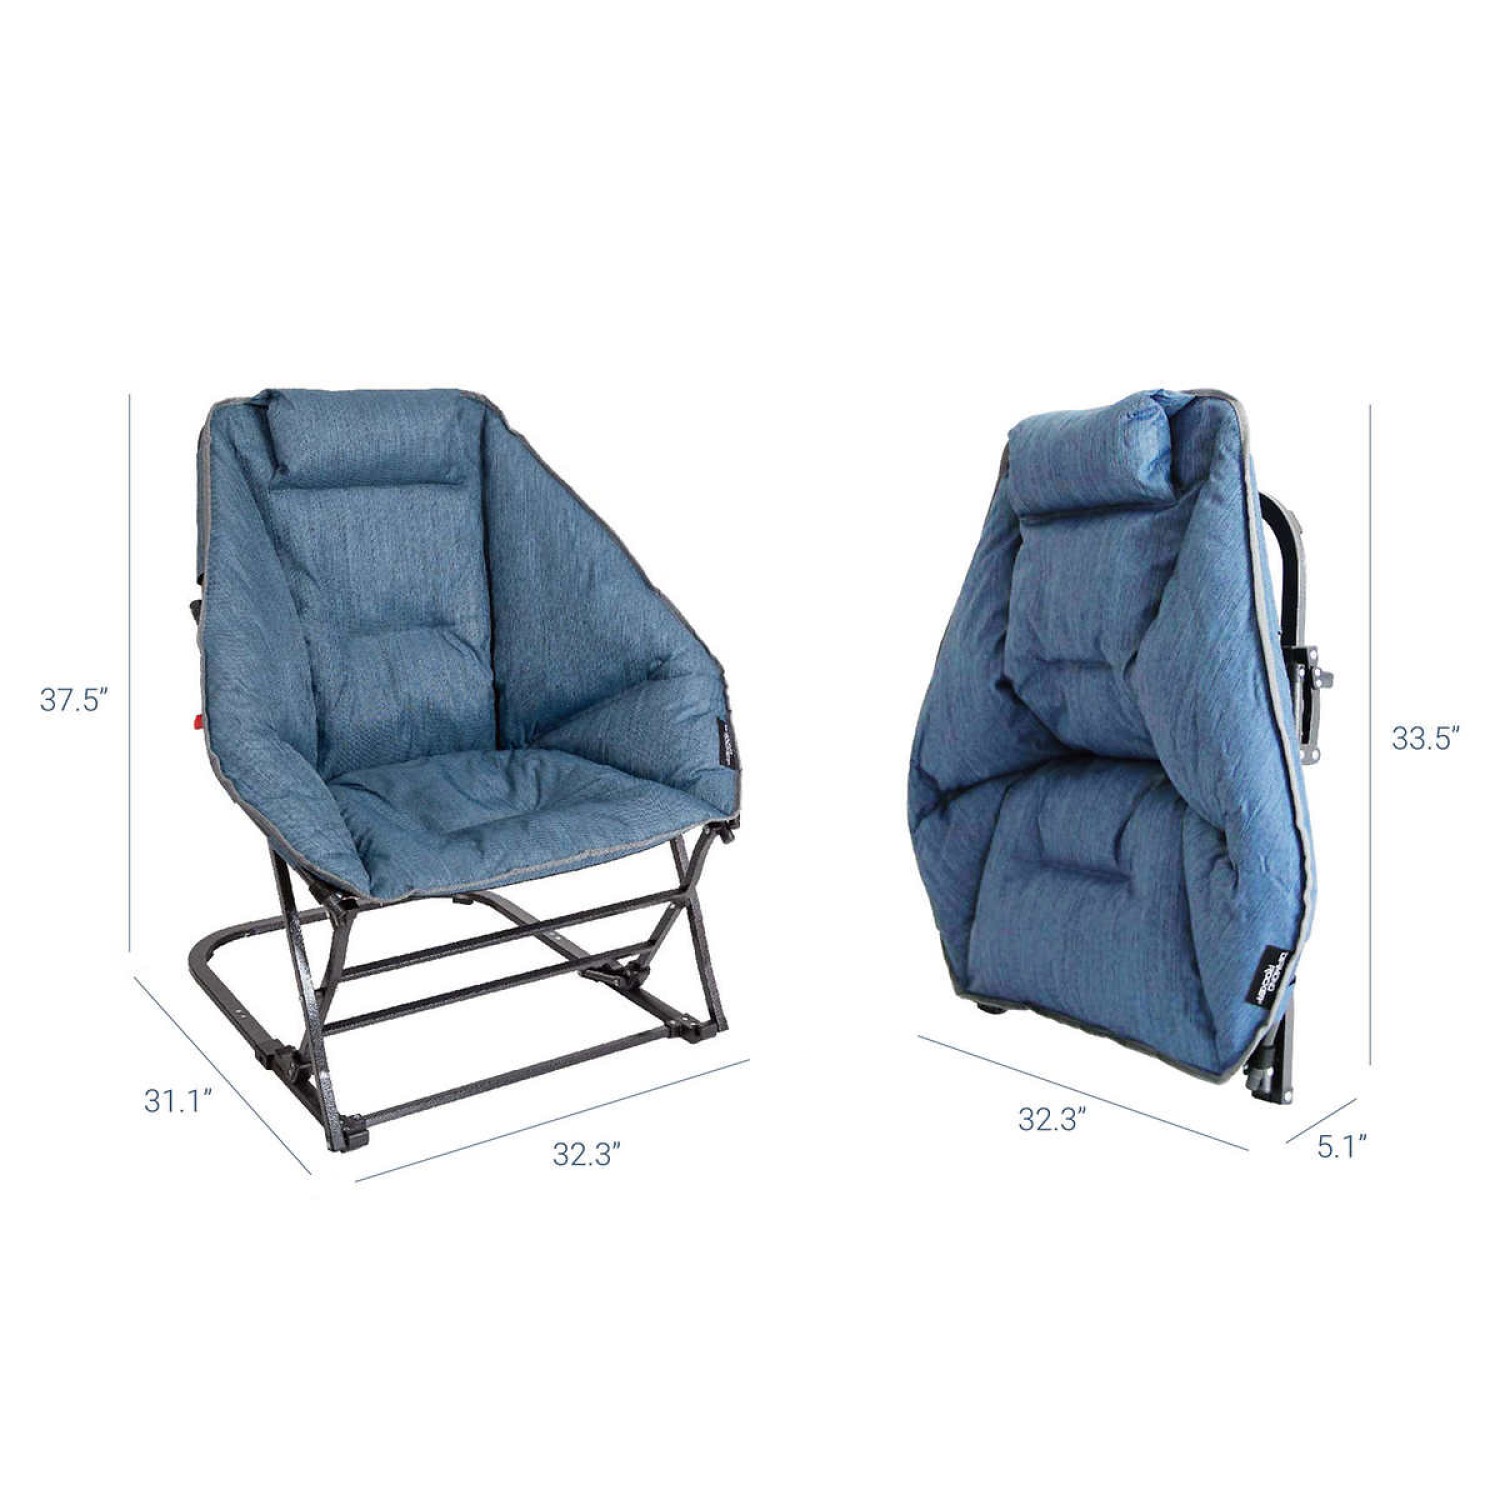 Details about   Mac Sports Diamond Rocker Chair Deluxe Padded Rocker Steel Frame 